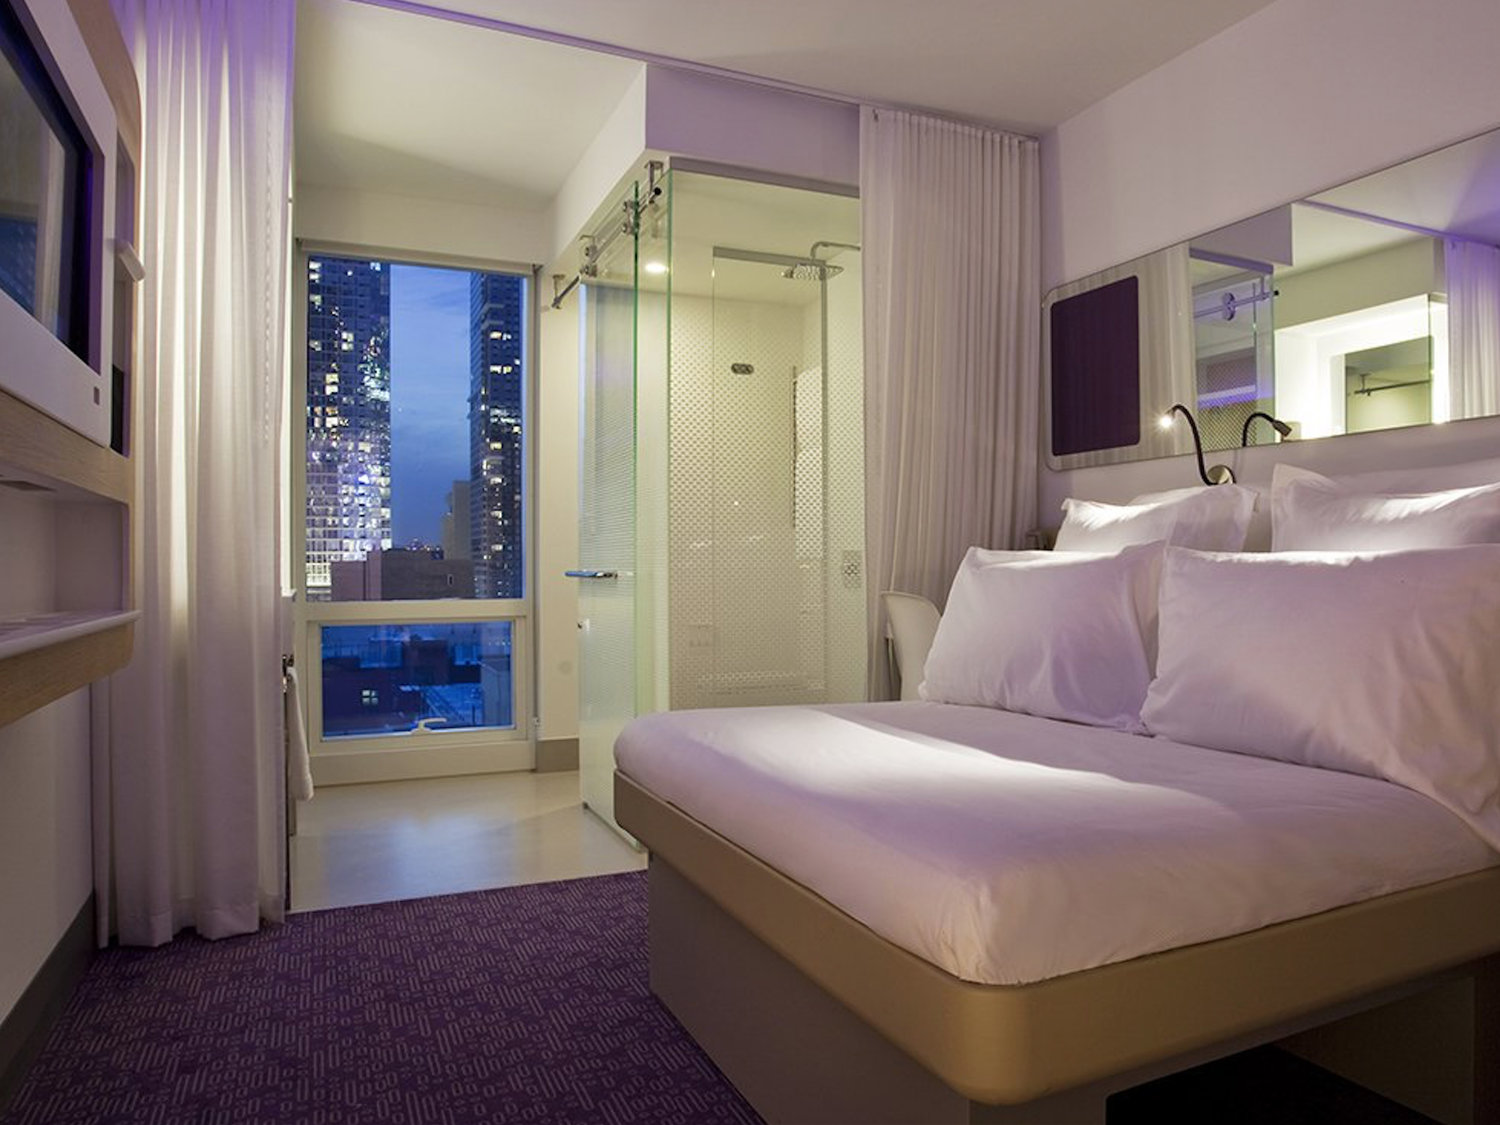 Снять гостиницу в нью йорке недорого снять квартиру в италии недорого